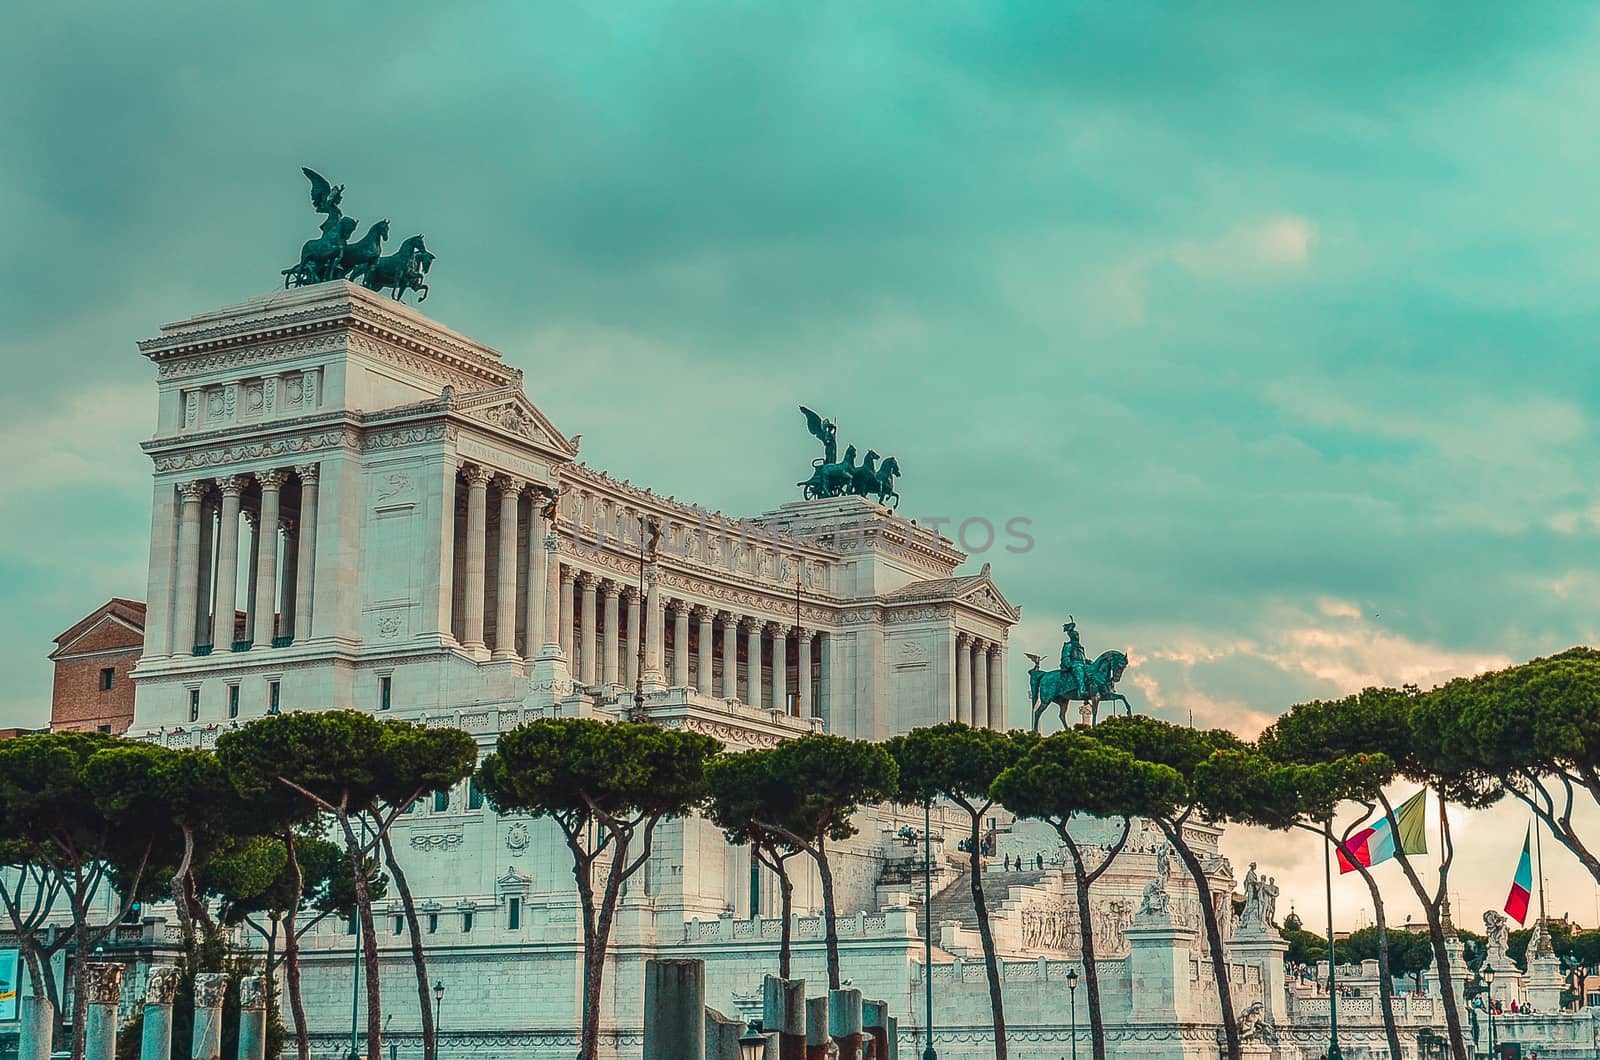 The Altare della Patria, also known as the Vittorio Emanuele II Monument on Piazza Venezia in Rome, Italy